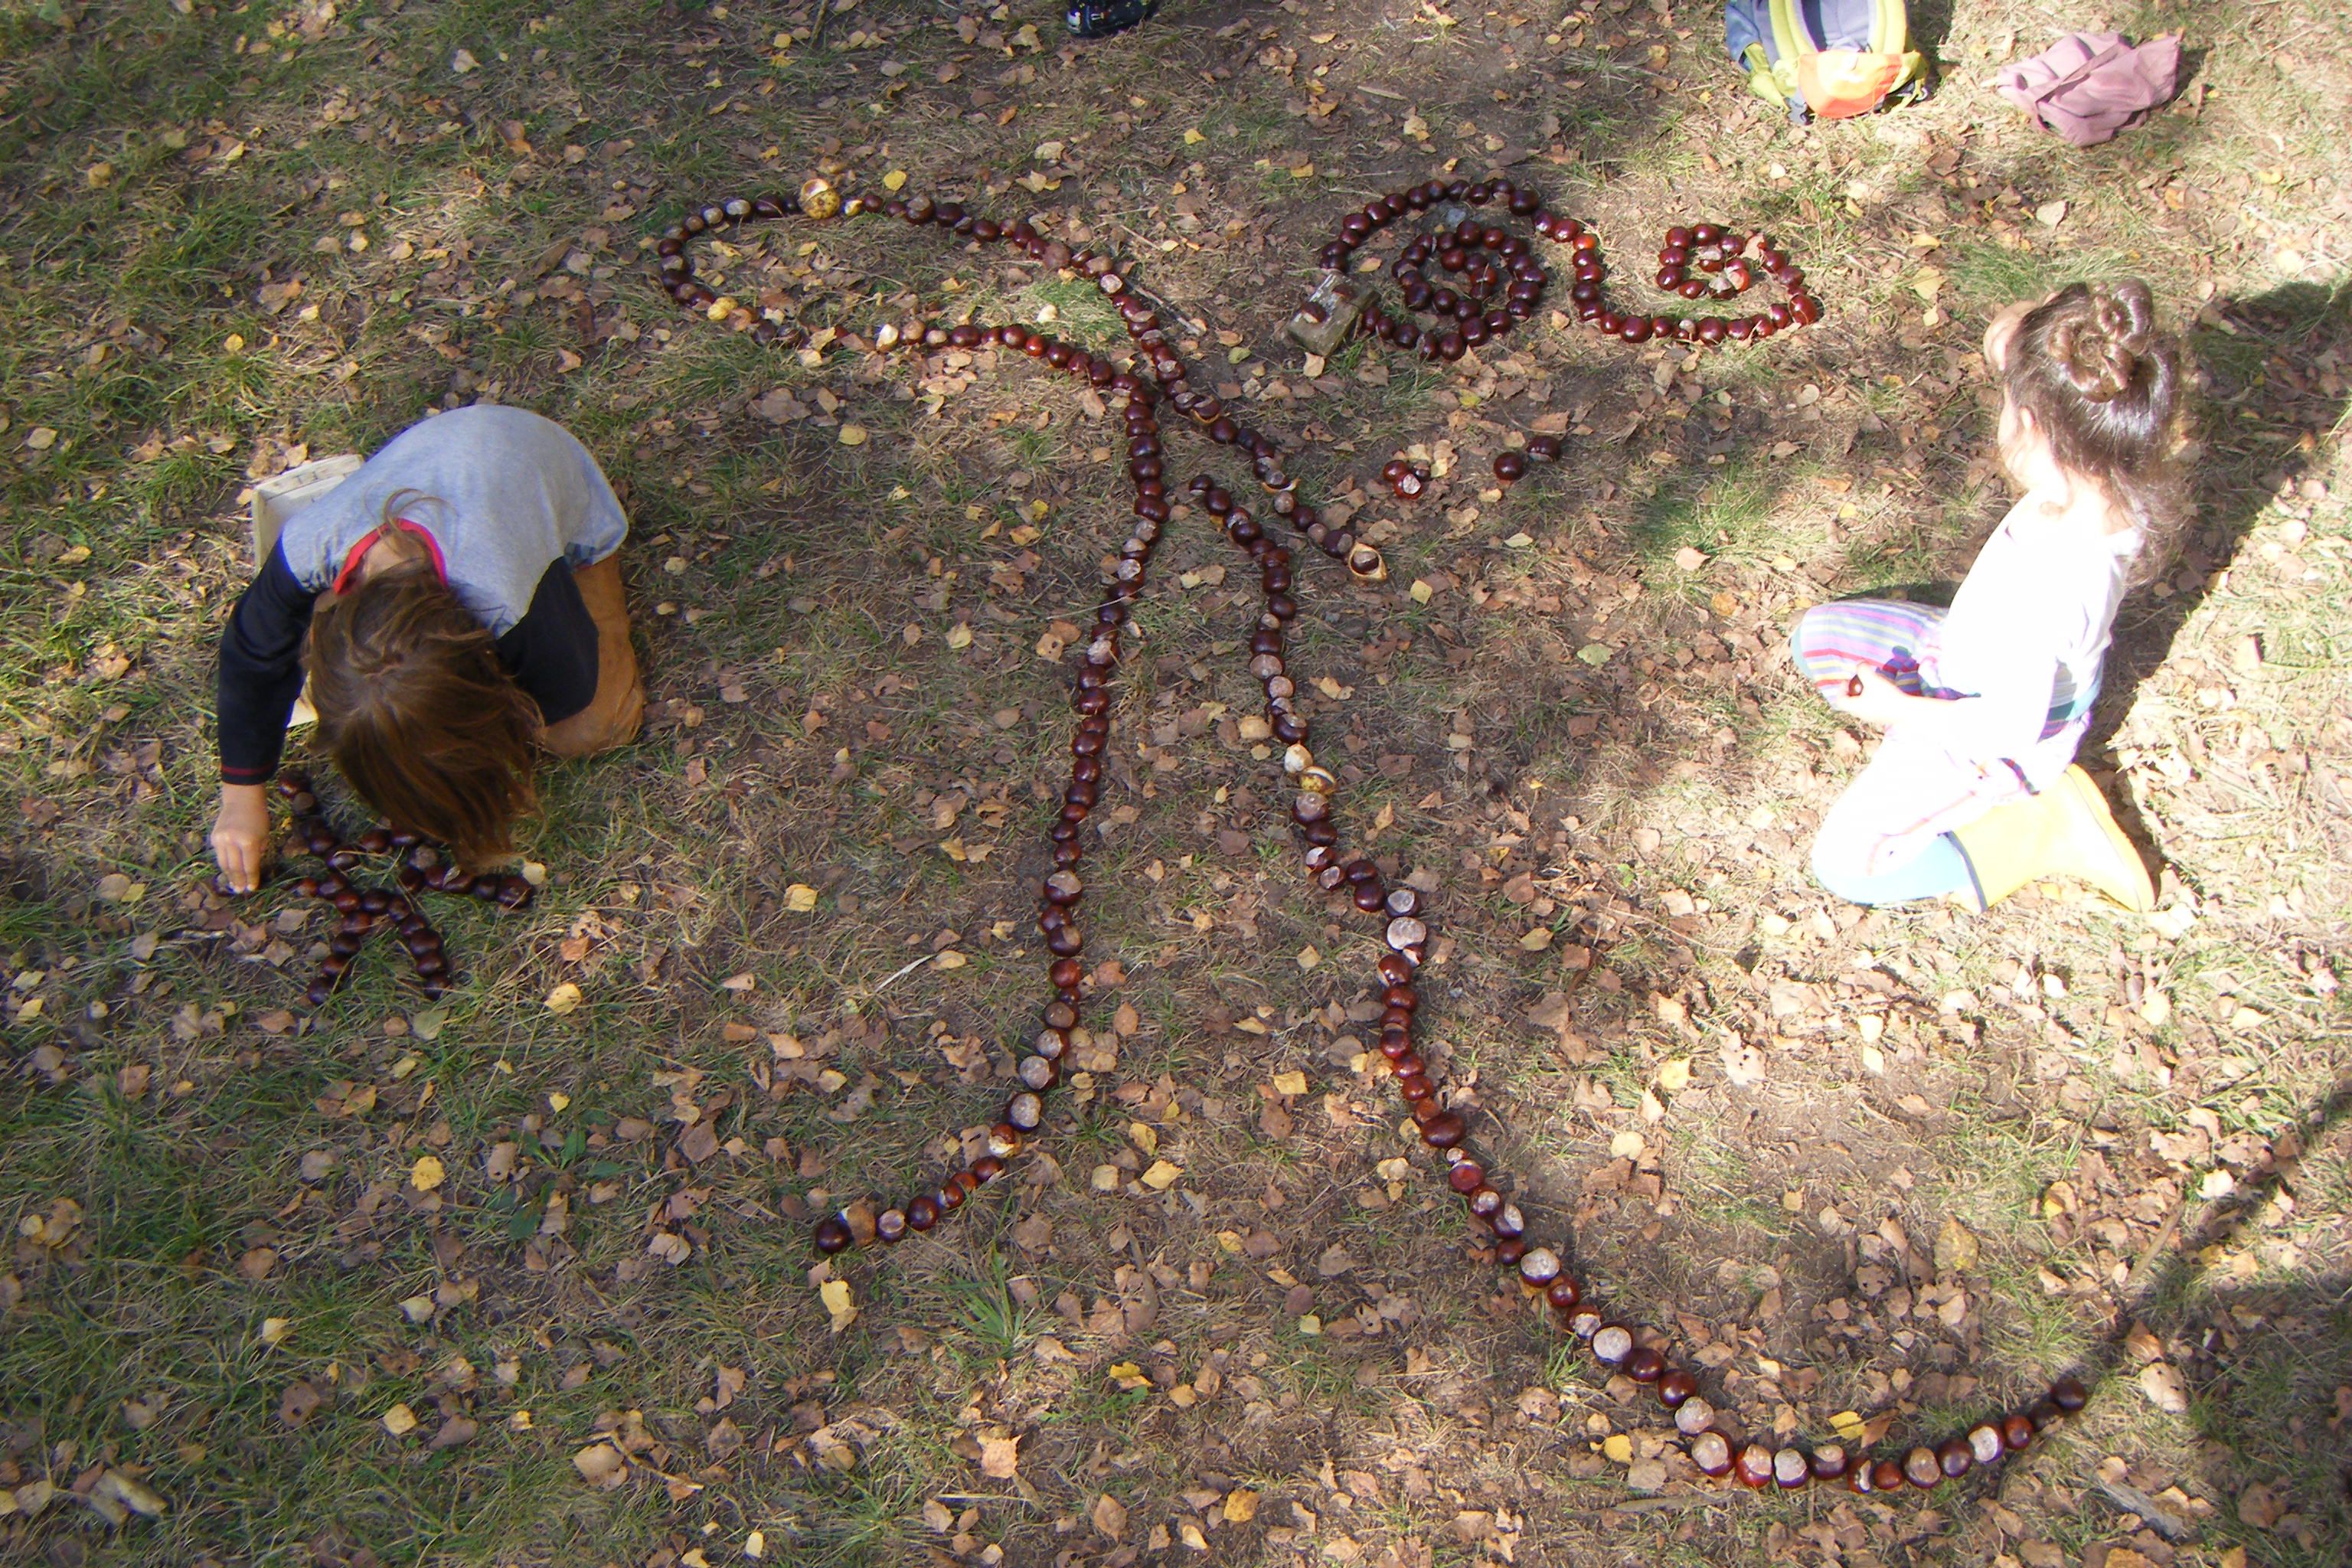 ein Kind legt ein weiters Muster aus kastanien auf den Waldboden